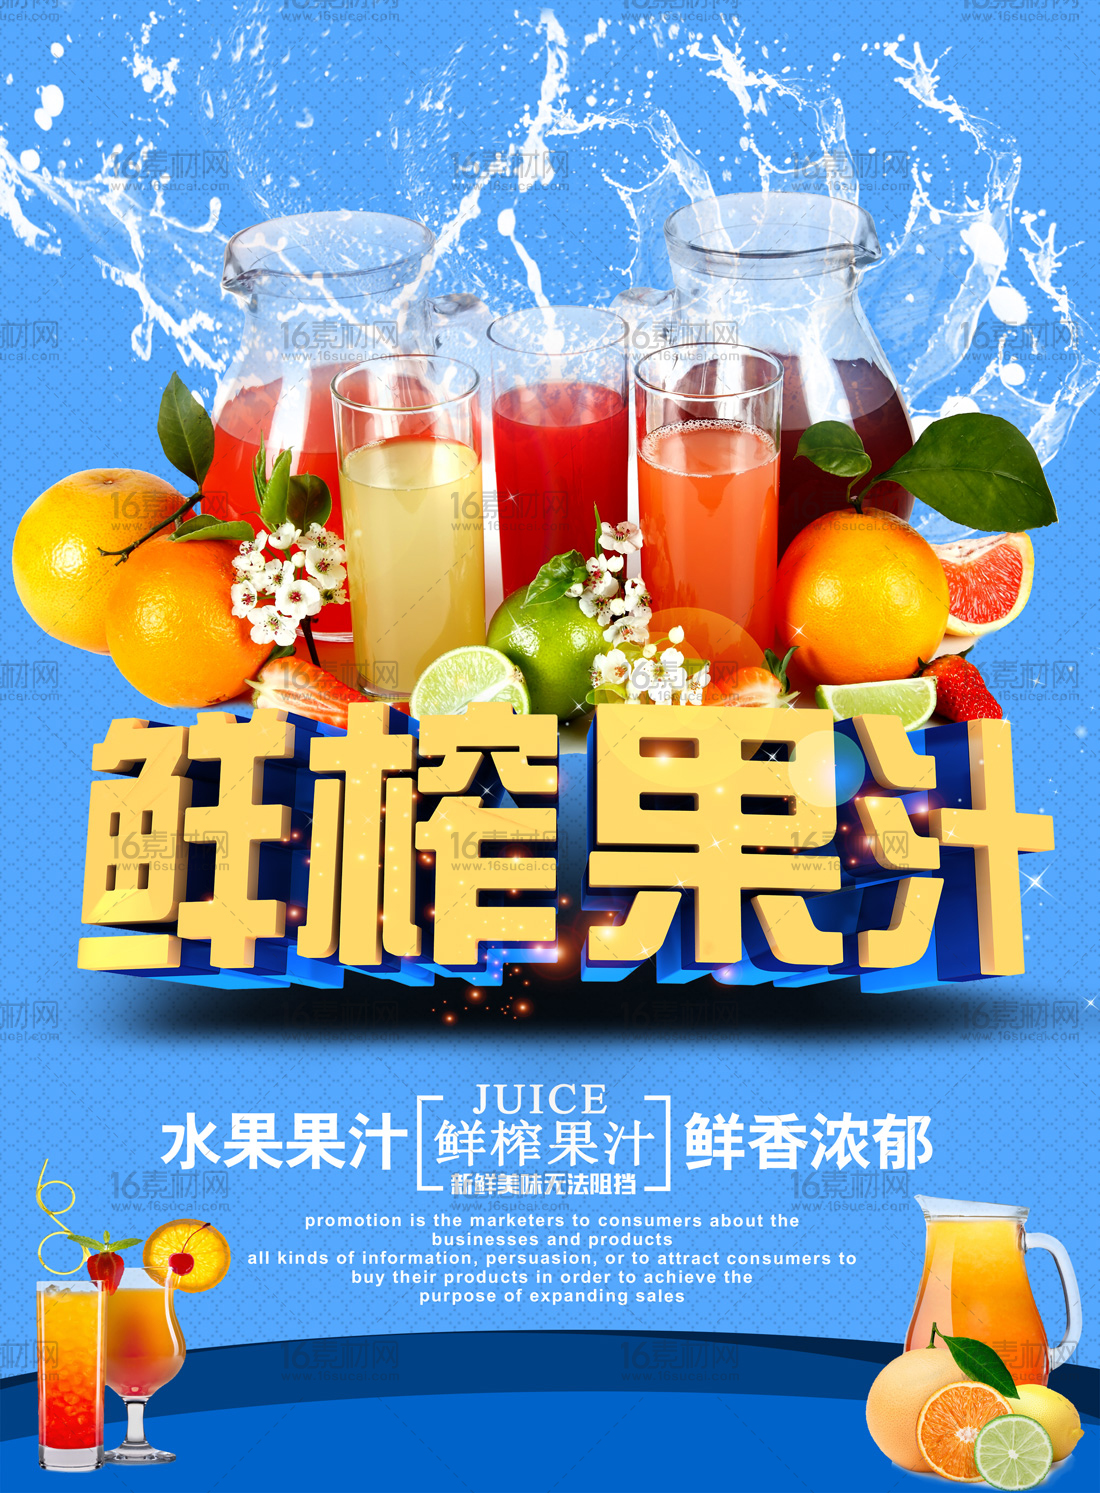 蓝色动感鲜榨果汁宣传海报psd分层素材